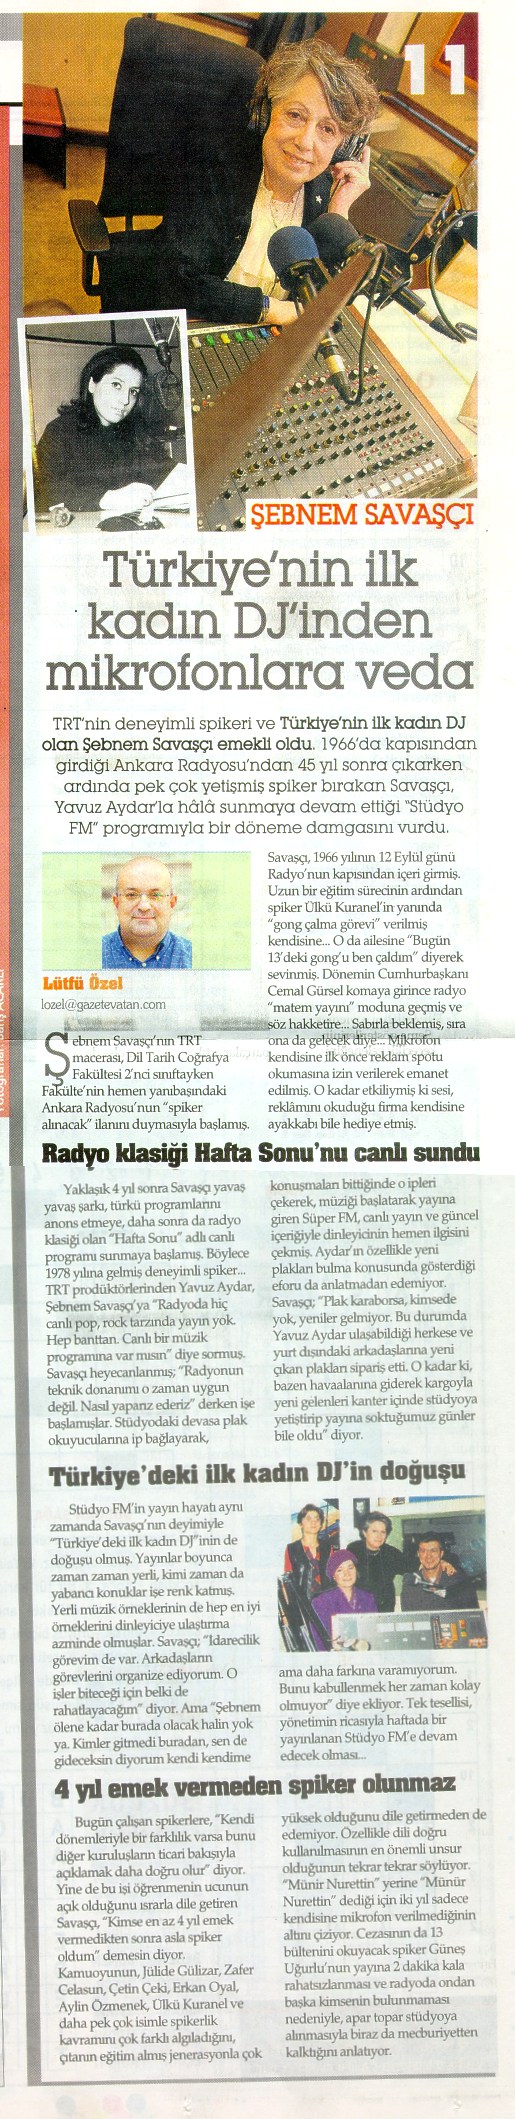  Sebnem SAVASÇI, Vatan Pazar,  3 Nisan 2011